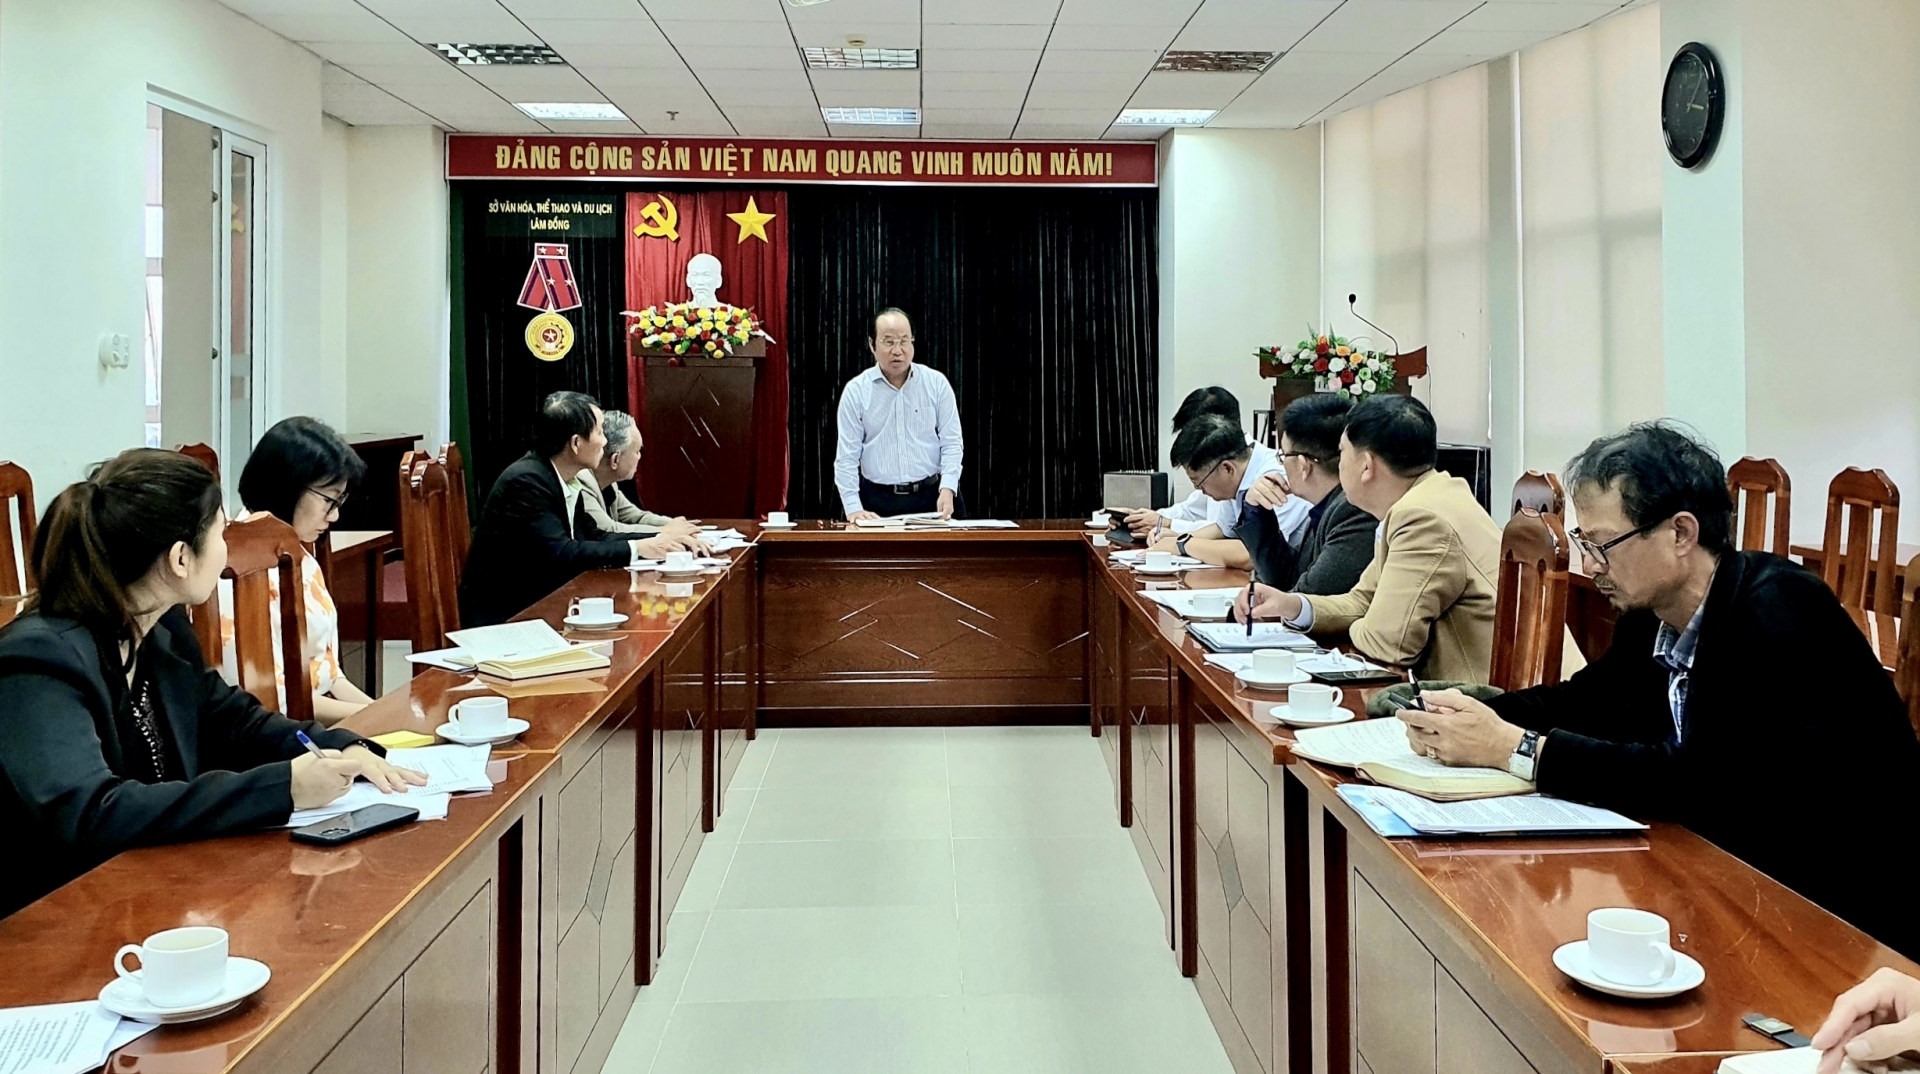 Chương trình làm việc do ông Trần Thanh Hoài – Phó Giám đốc Sở VHTT&DL tỉnh Lâm Đồng chủ trì